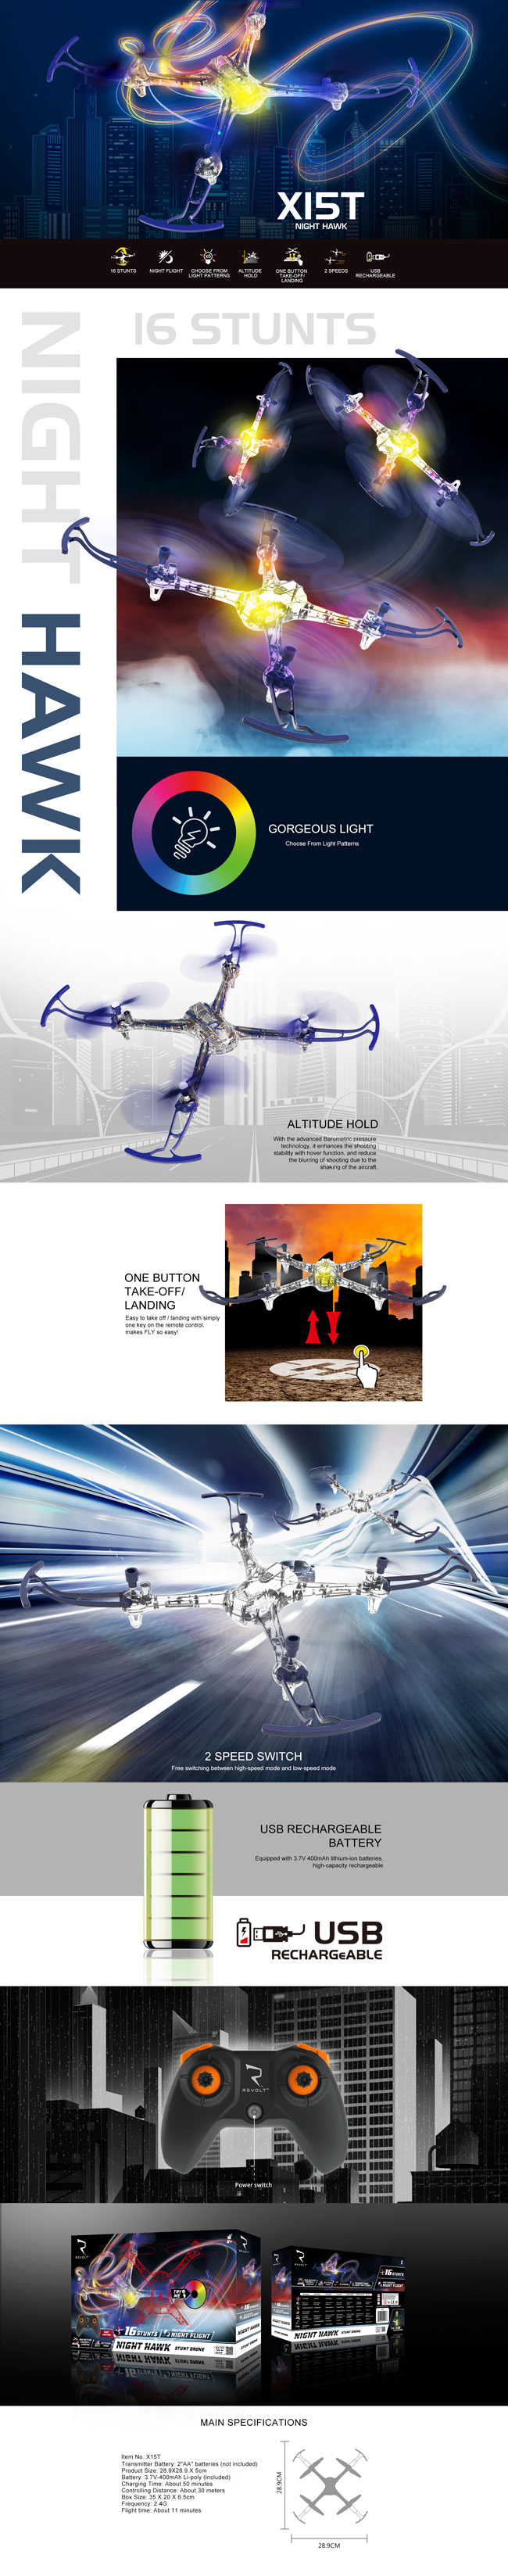 قابلیت های کوادکوپتر شیشه ای syma-x15t با امکان پرواز خودکار و پایدار که دوربین ندارد